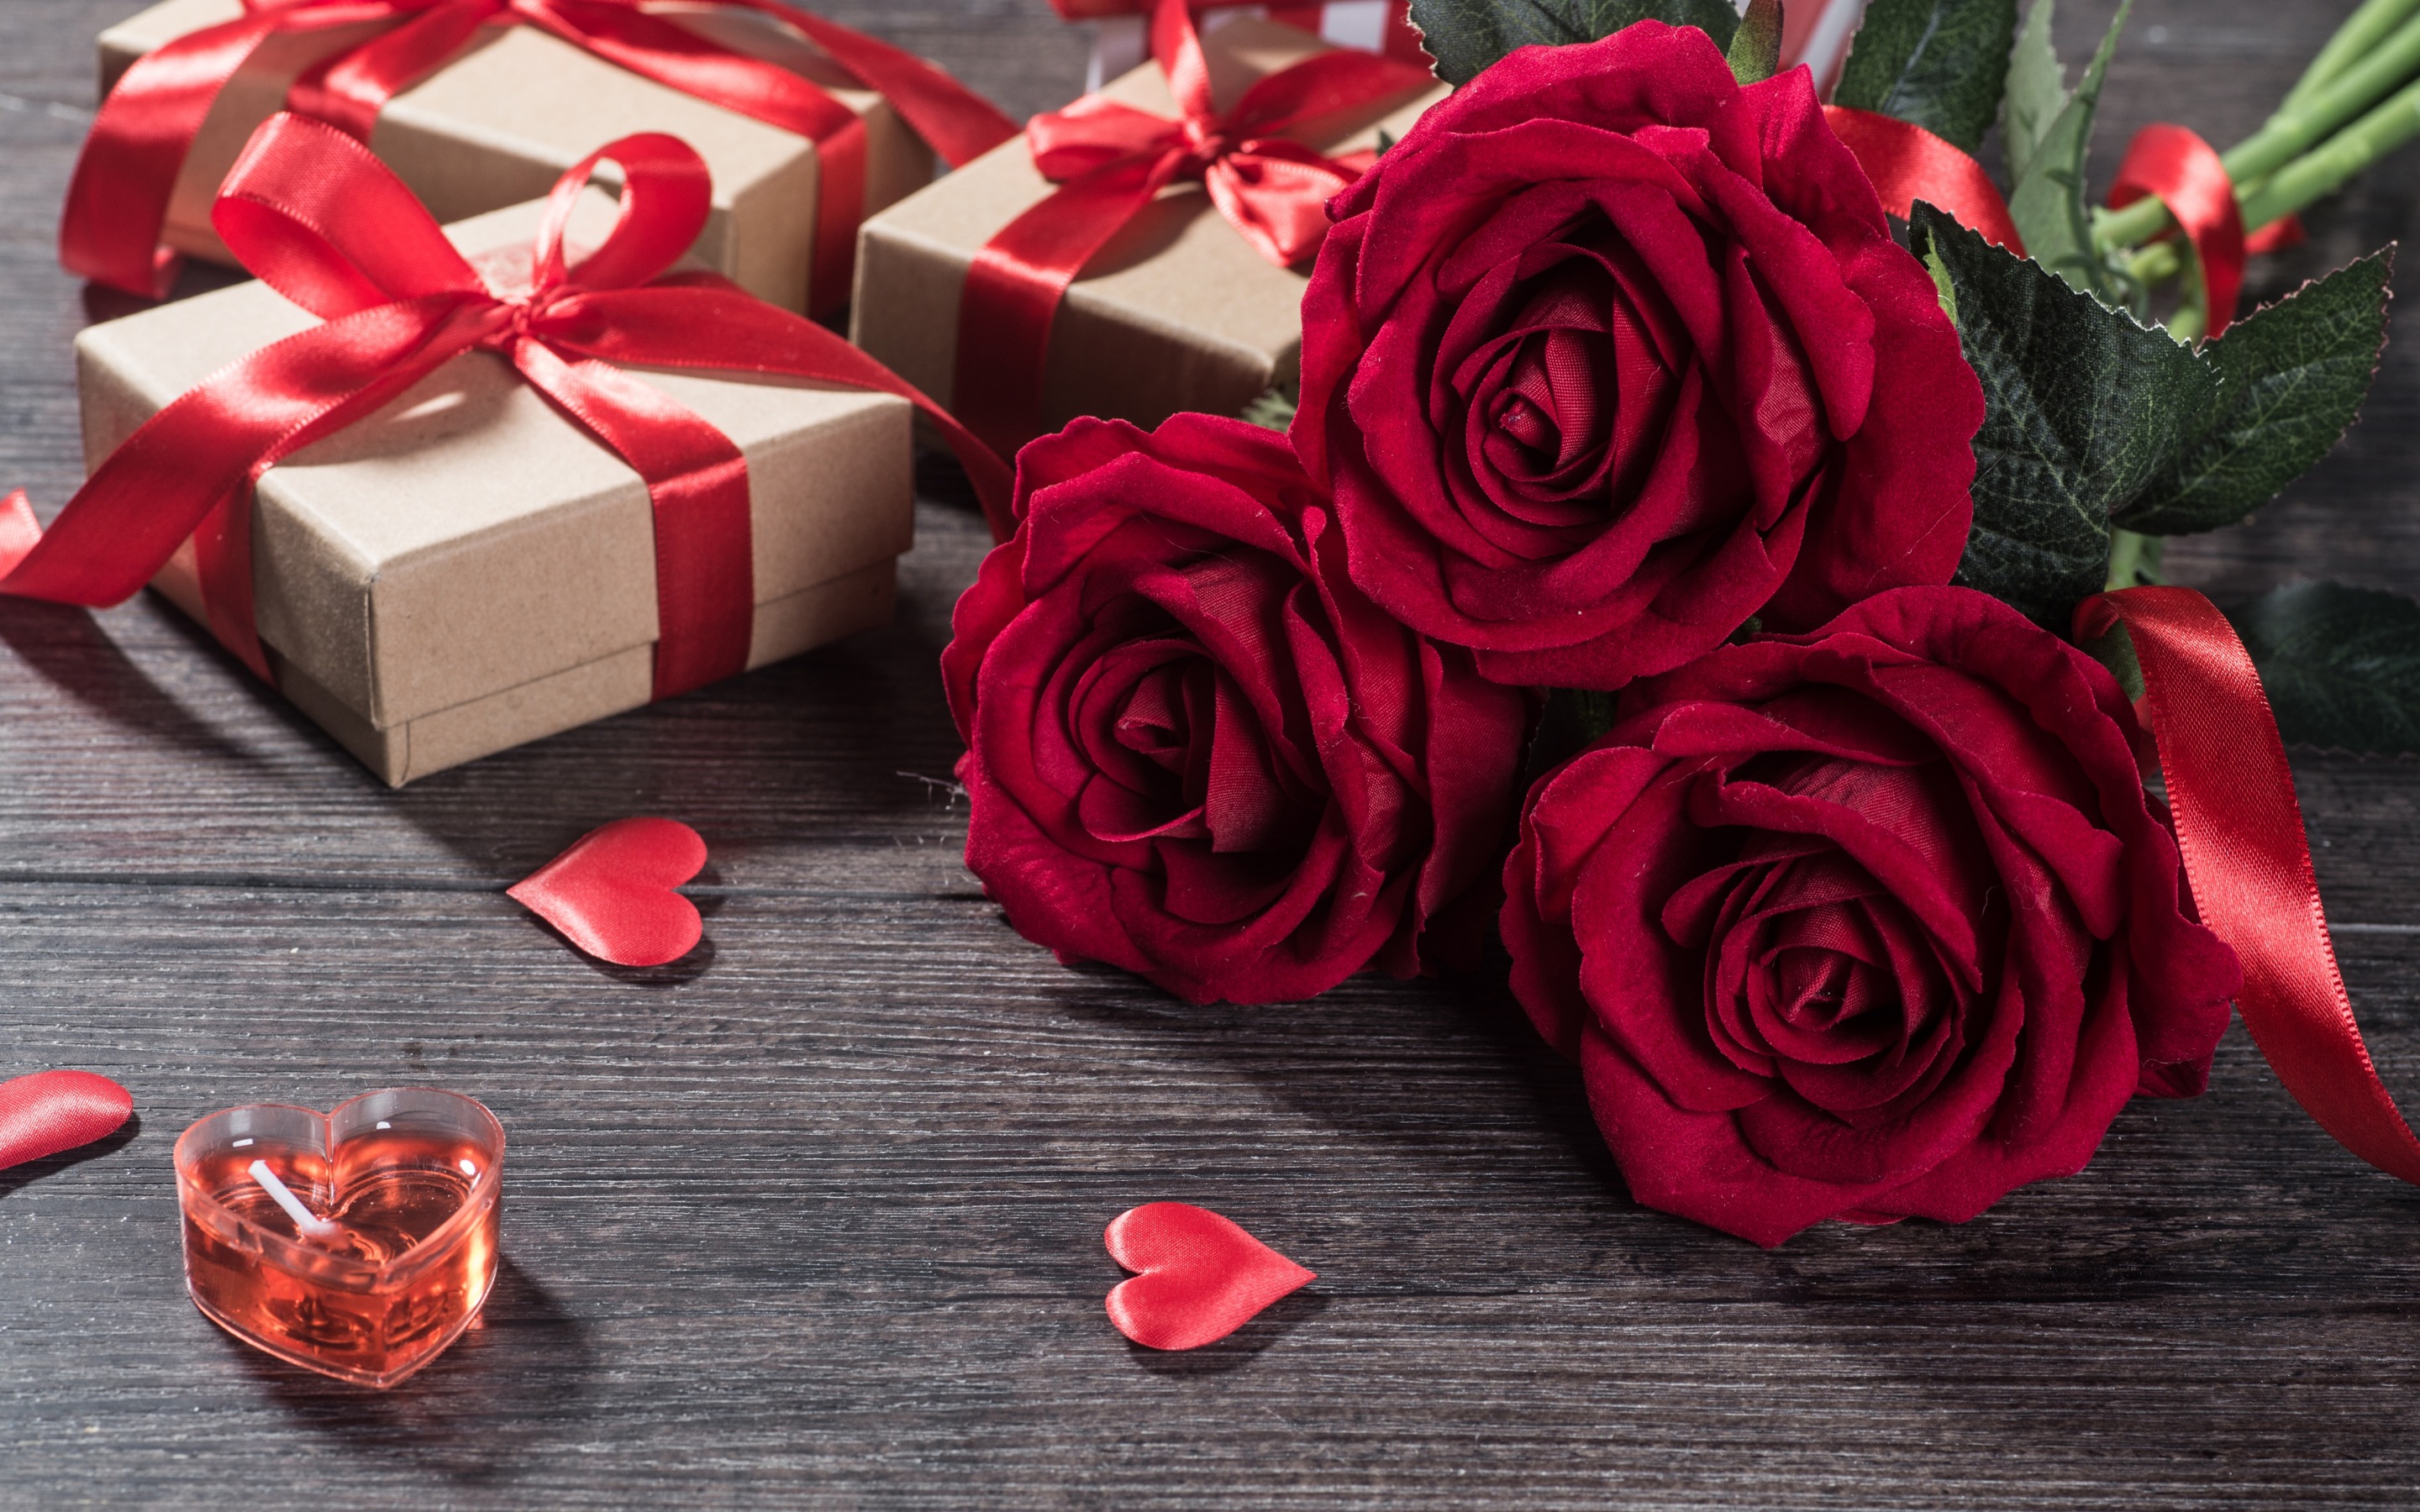 Скачать обои бесплатно Роза, Сердце, Подарки, День Святого Валентина, Праздничные картинка на рабочий стол ПК